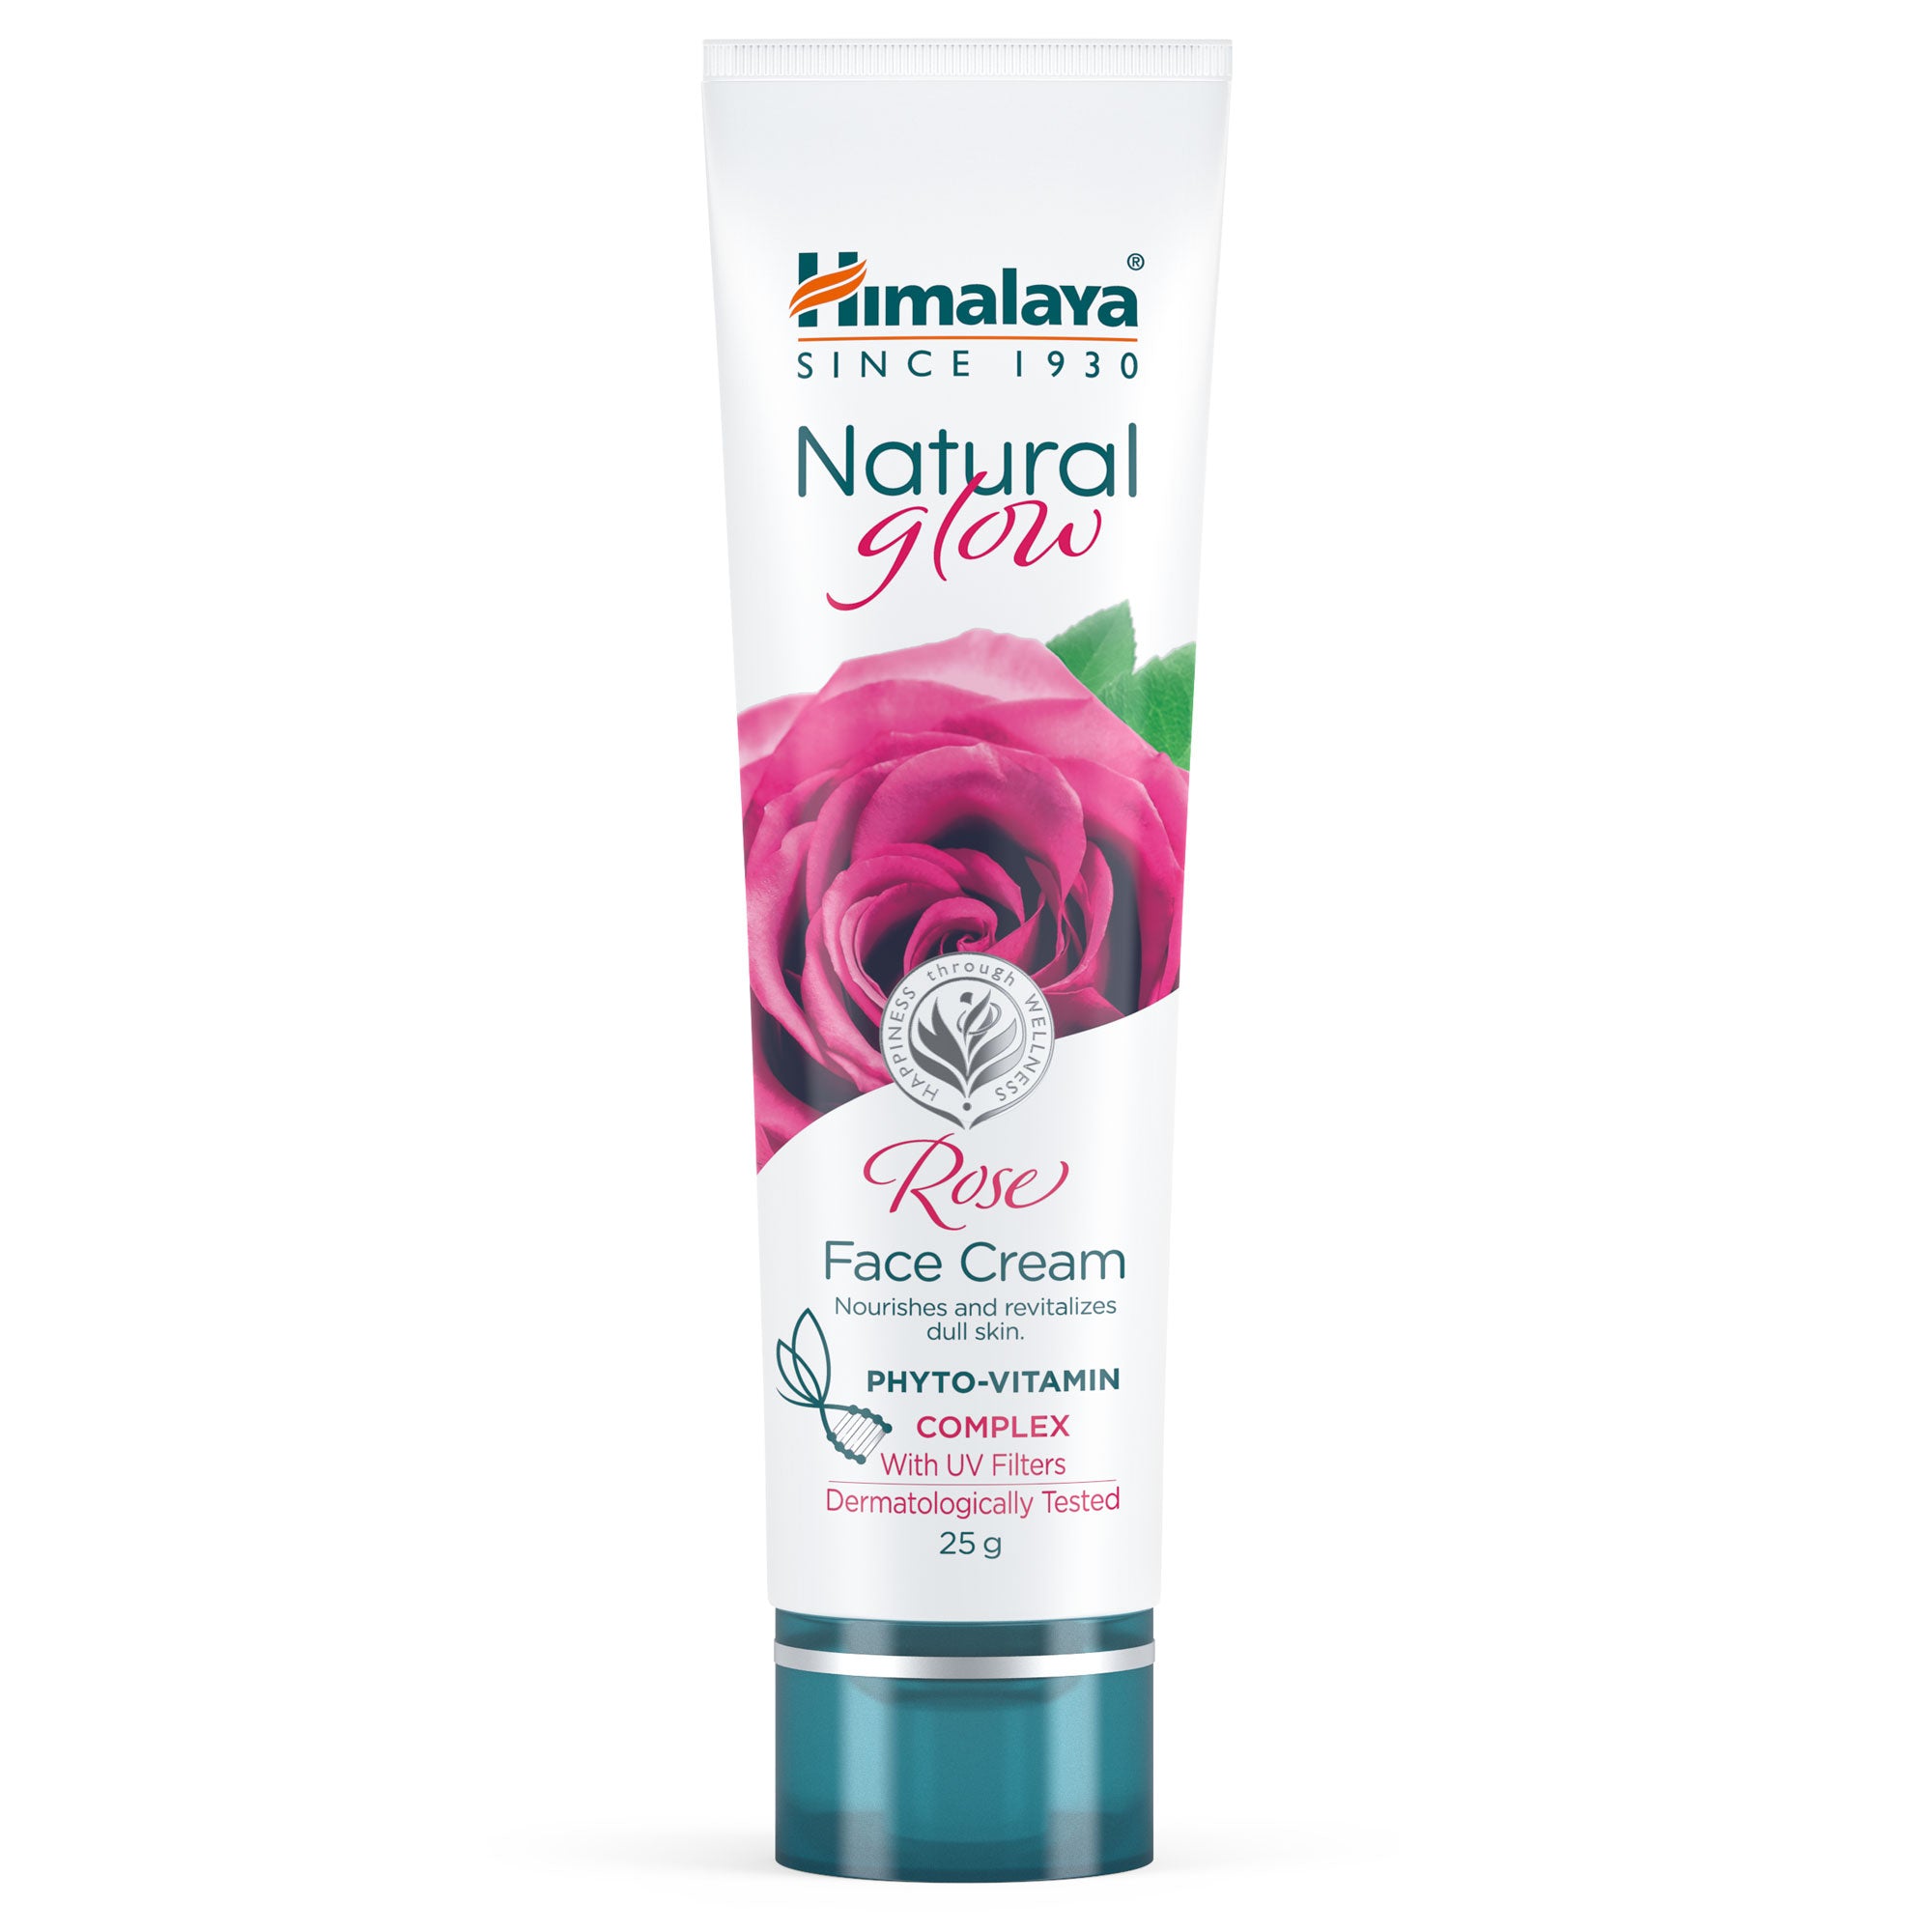 Himalaya Natural Glow Rose Face Cream 25g